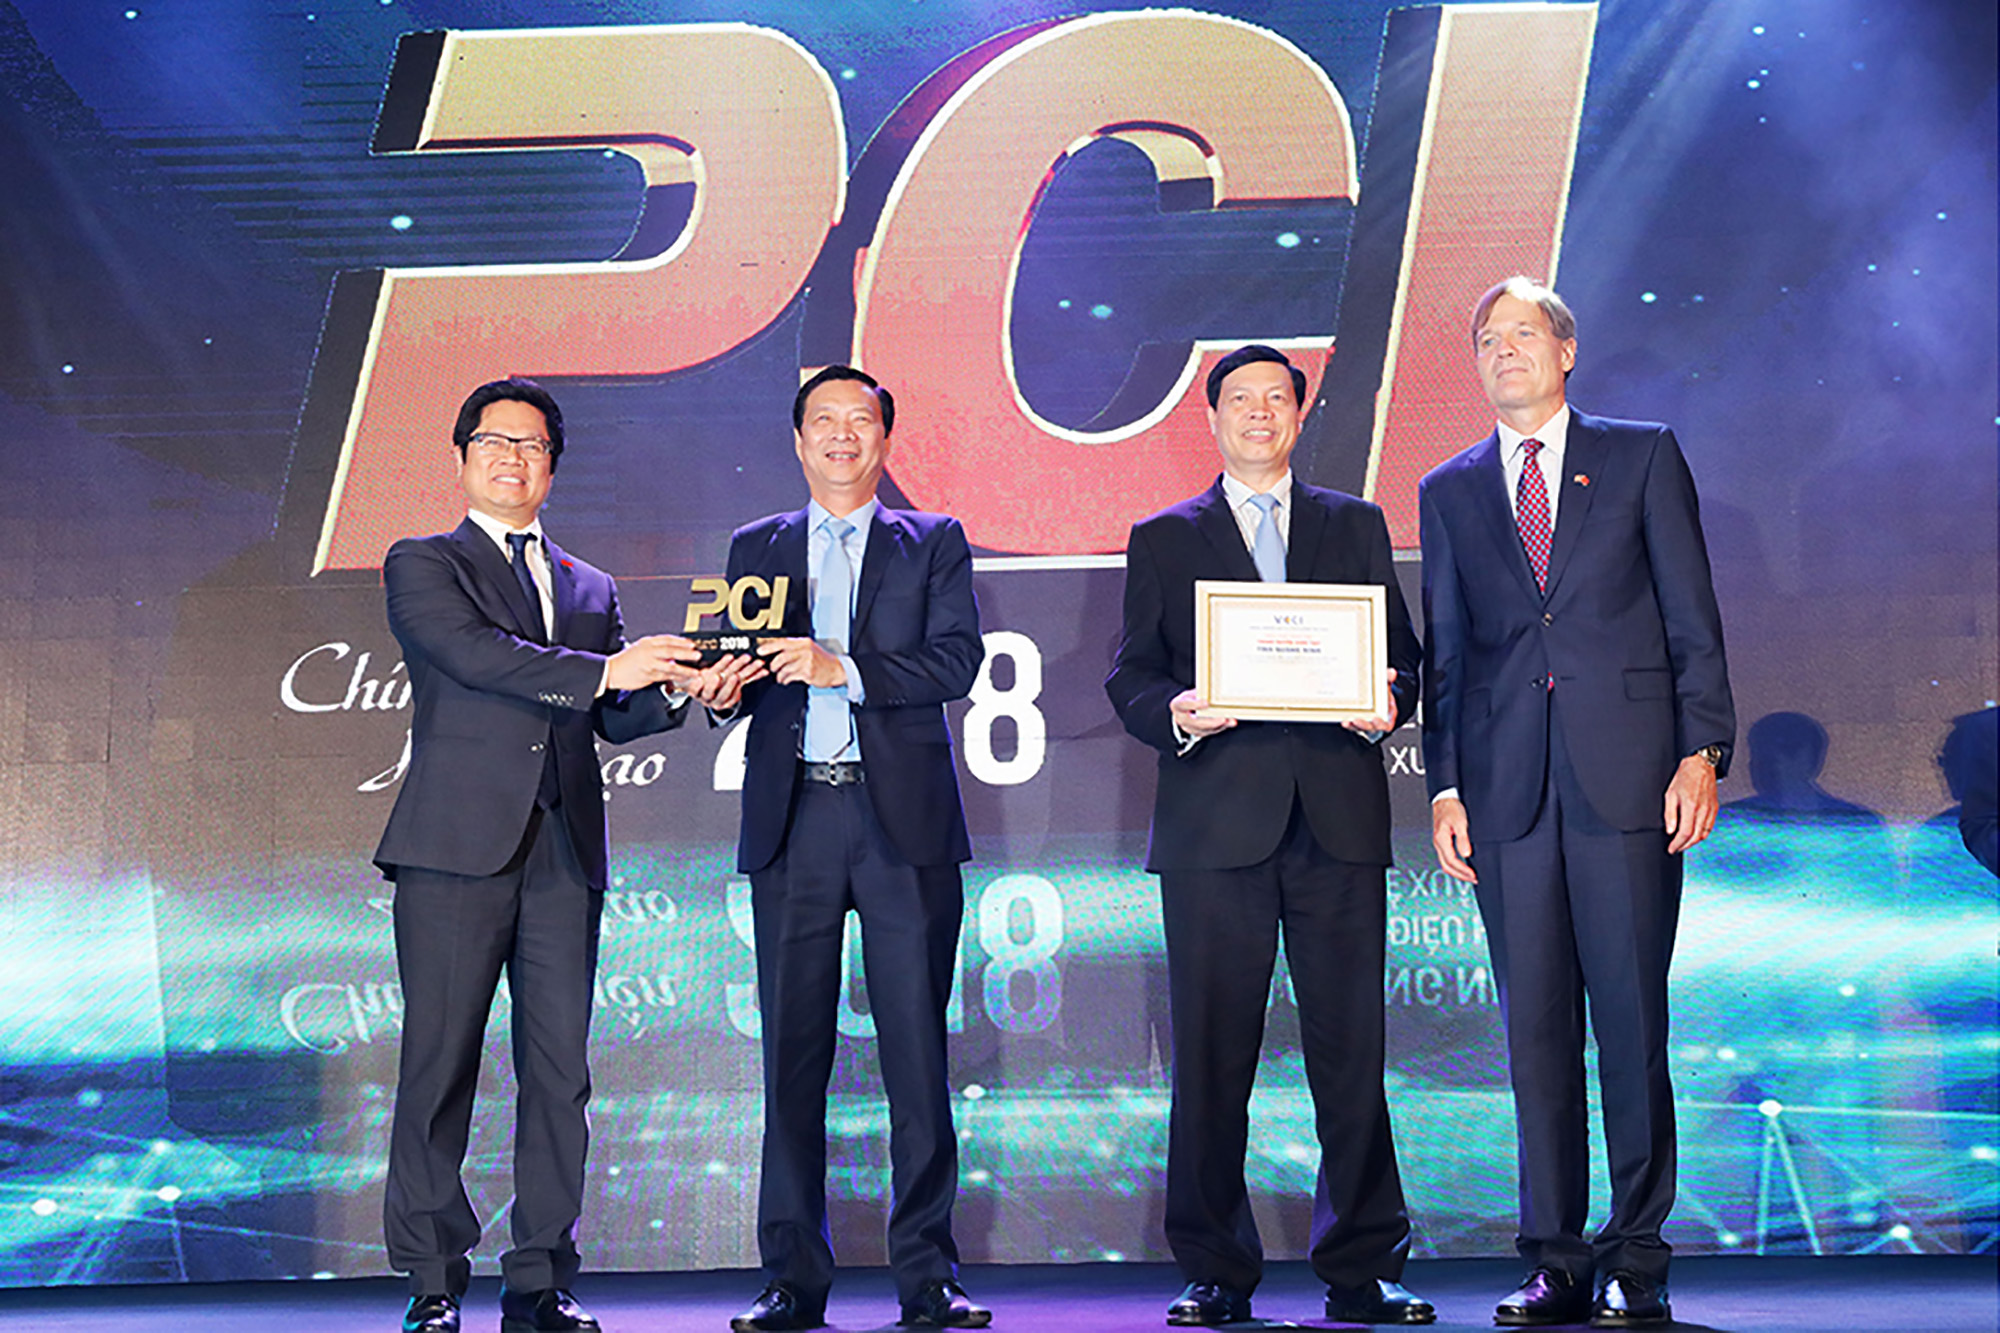 Lãnh đạo tỉnh Quảng Ninh nhận cúp quán quân PCI 2018, là tỉnh có chất lượng điều hành kinh tế xuất sắc (ảnh Đỗ Phương)